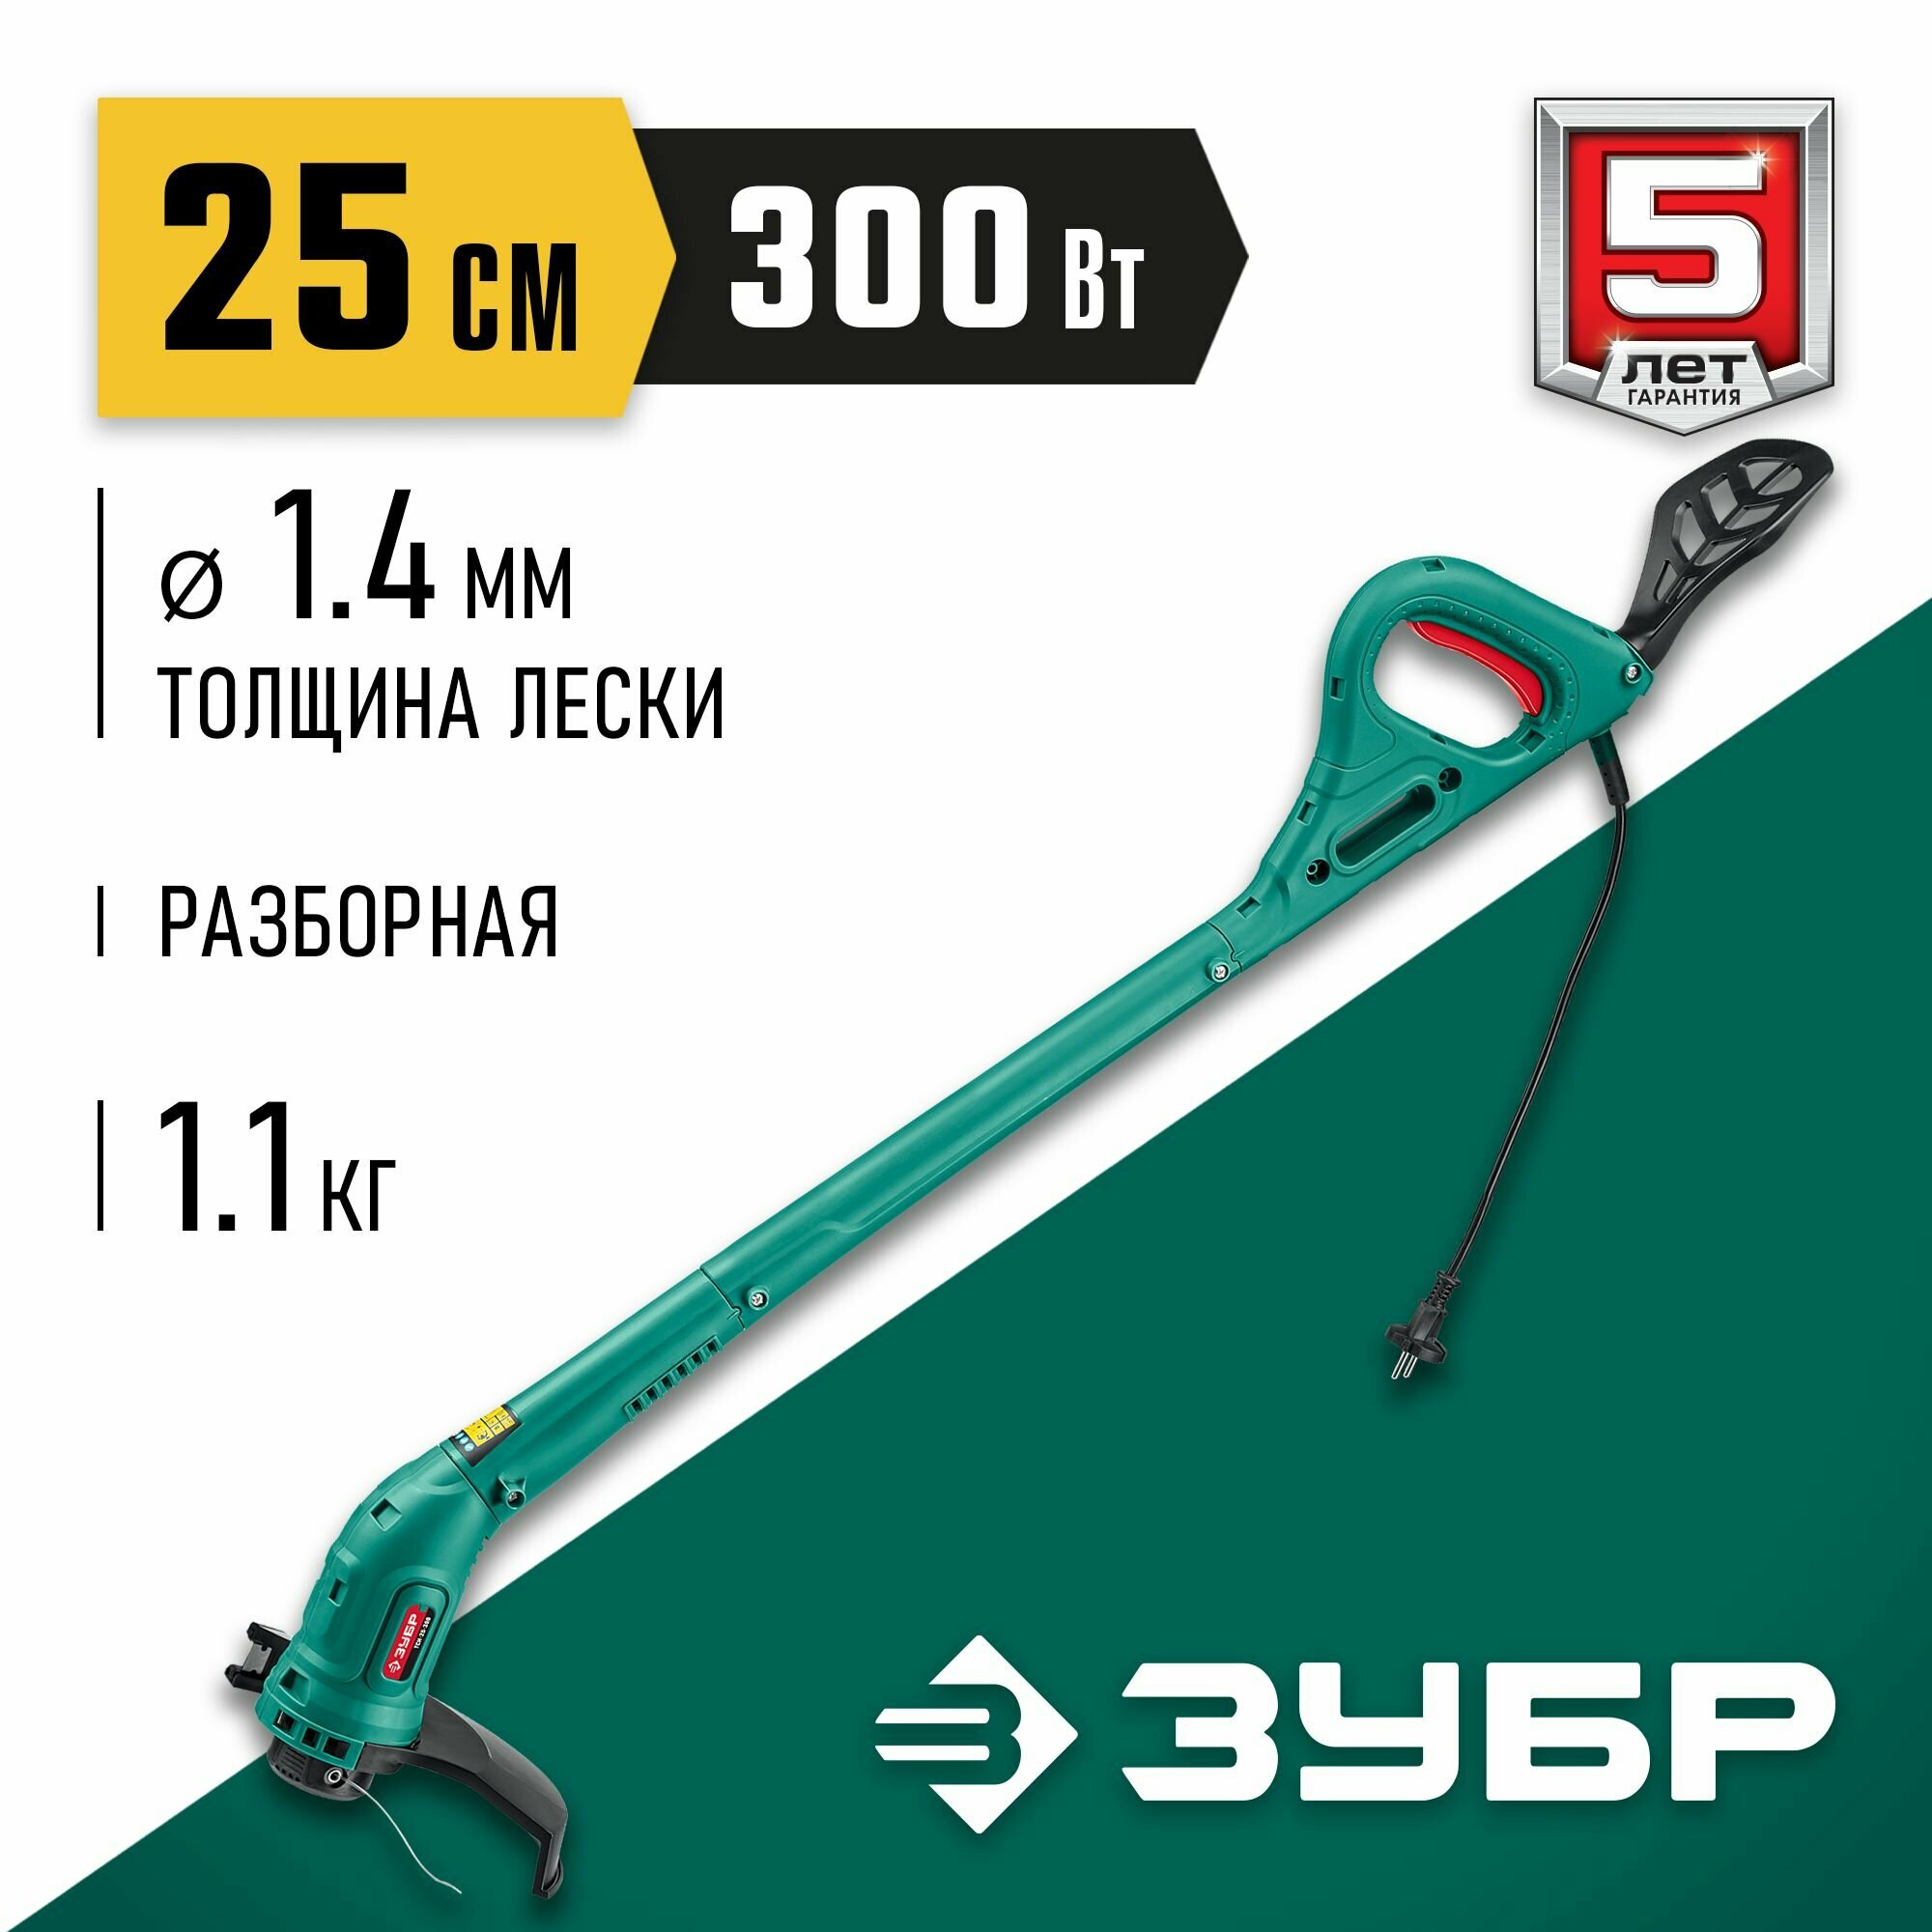 ЗУБР 300 Вт ш/с 25 см триммер сетевой ТСН-25-300 Мастер